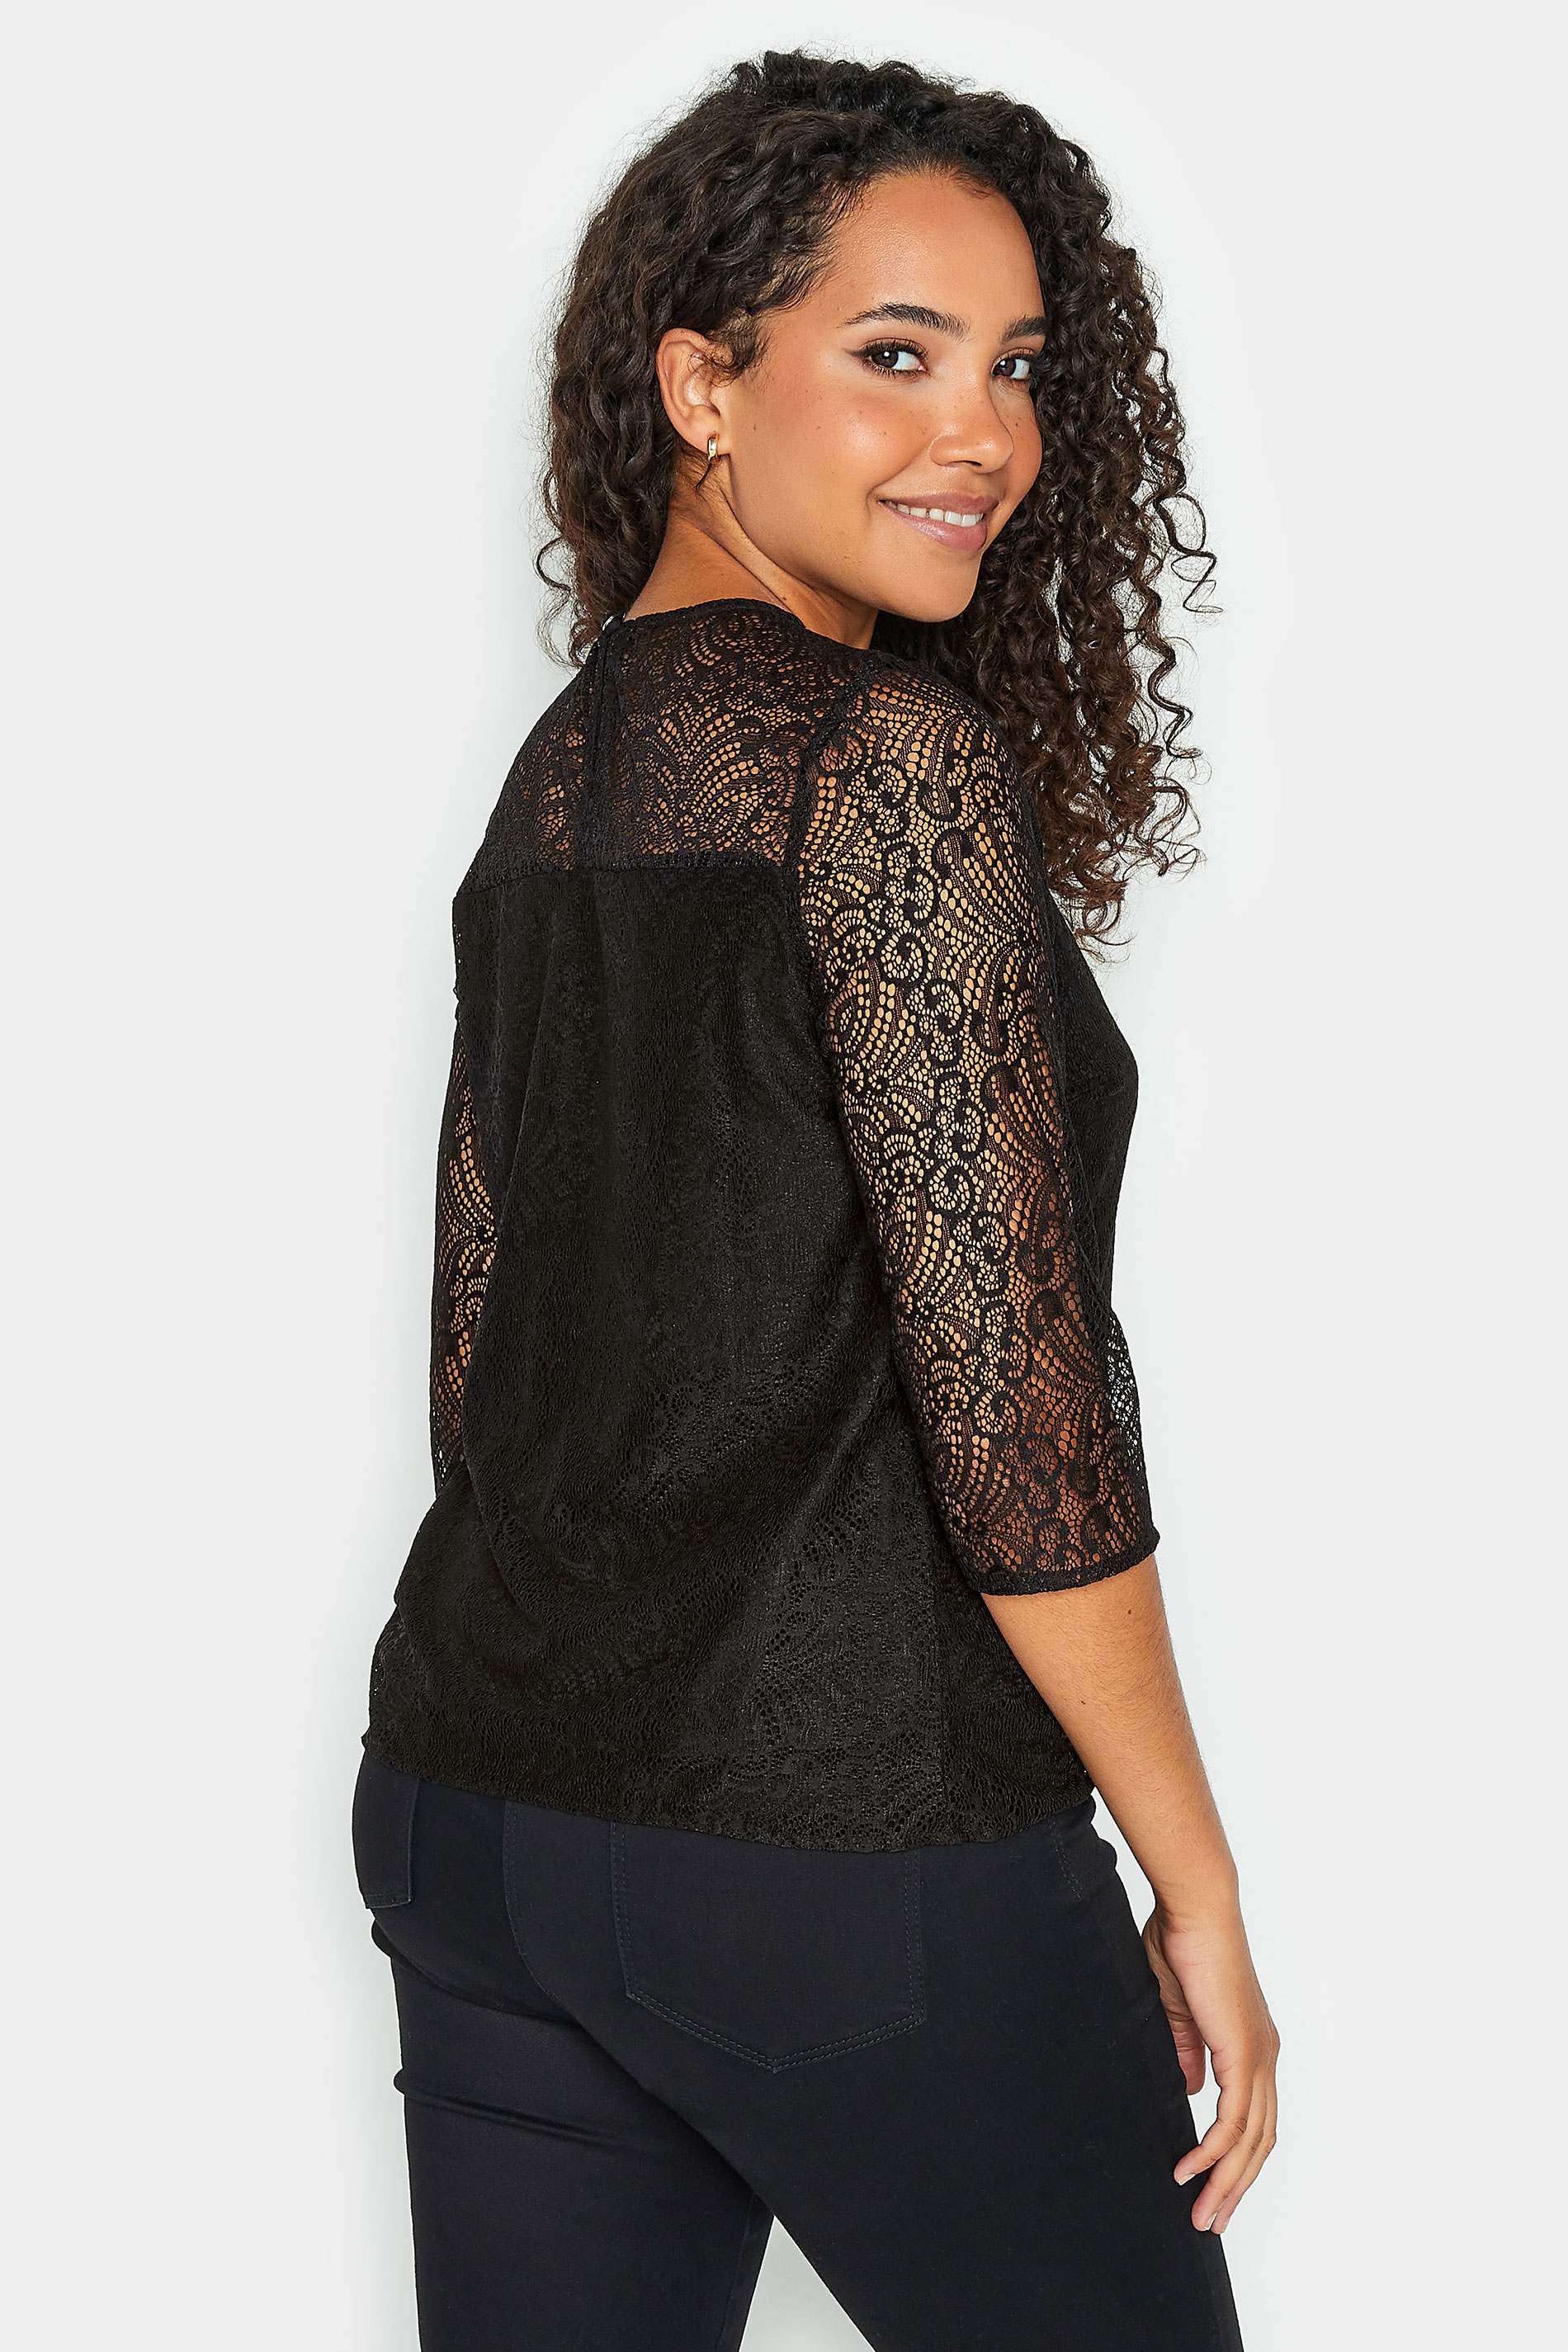 M&Co Black Long Sleeve Lace Blouse | M&Co  3